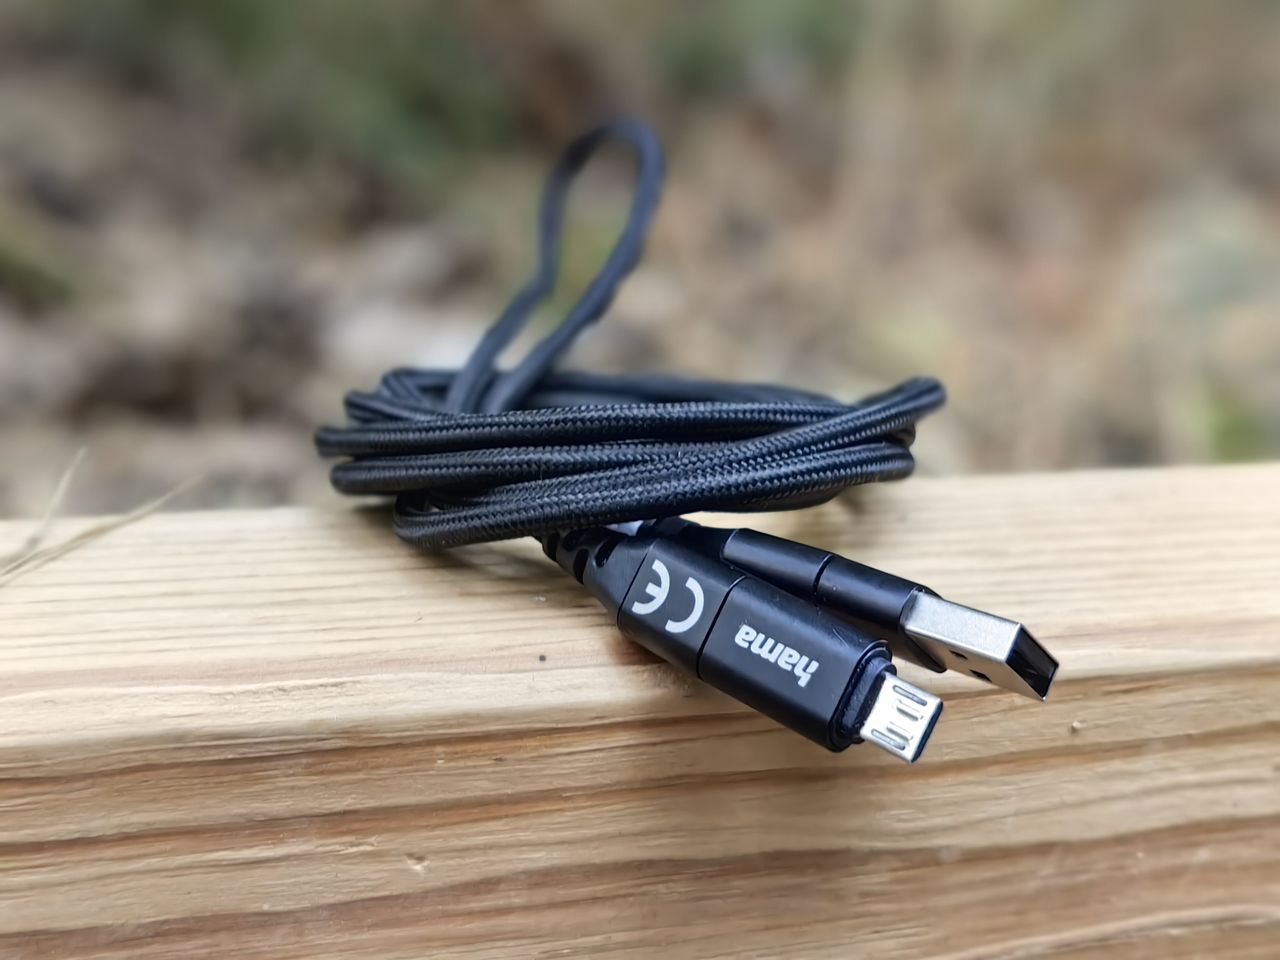 Kabel Hama 4in1 Charging/Data Cable ma 1,5 m długości i aluminiowe obudowy wtyczek